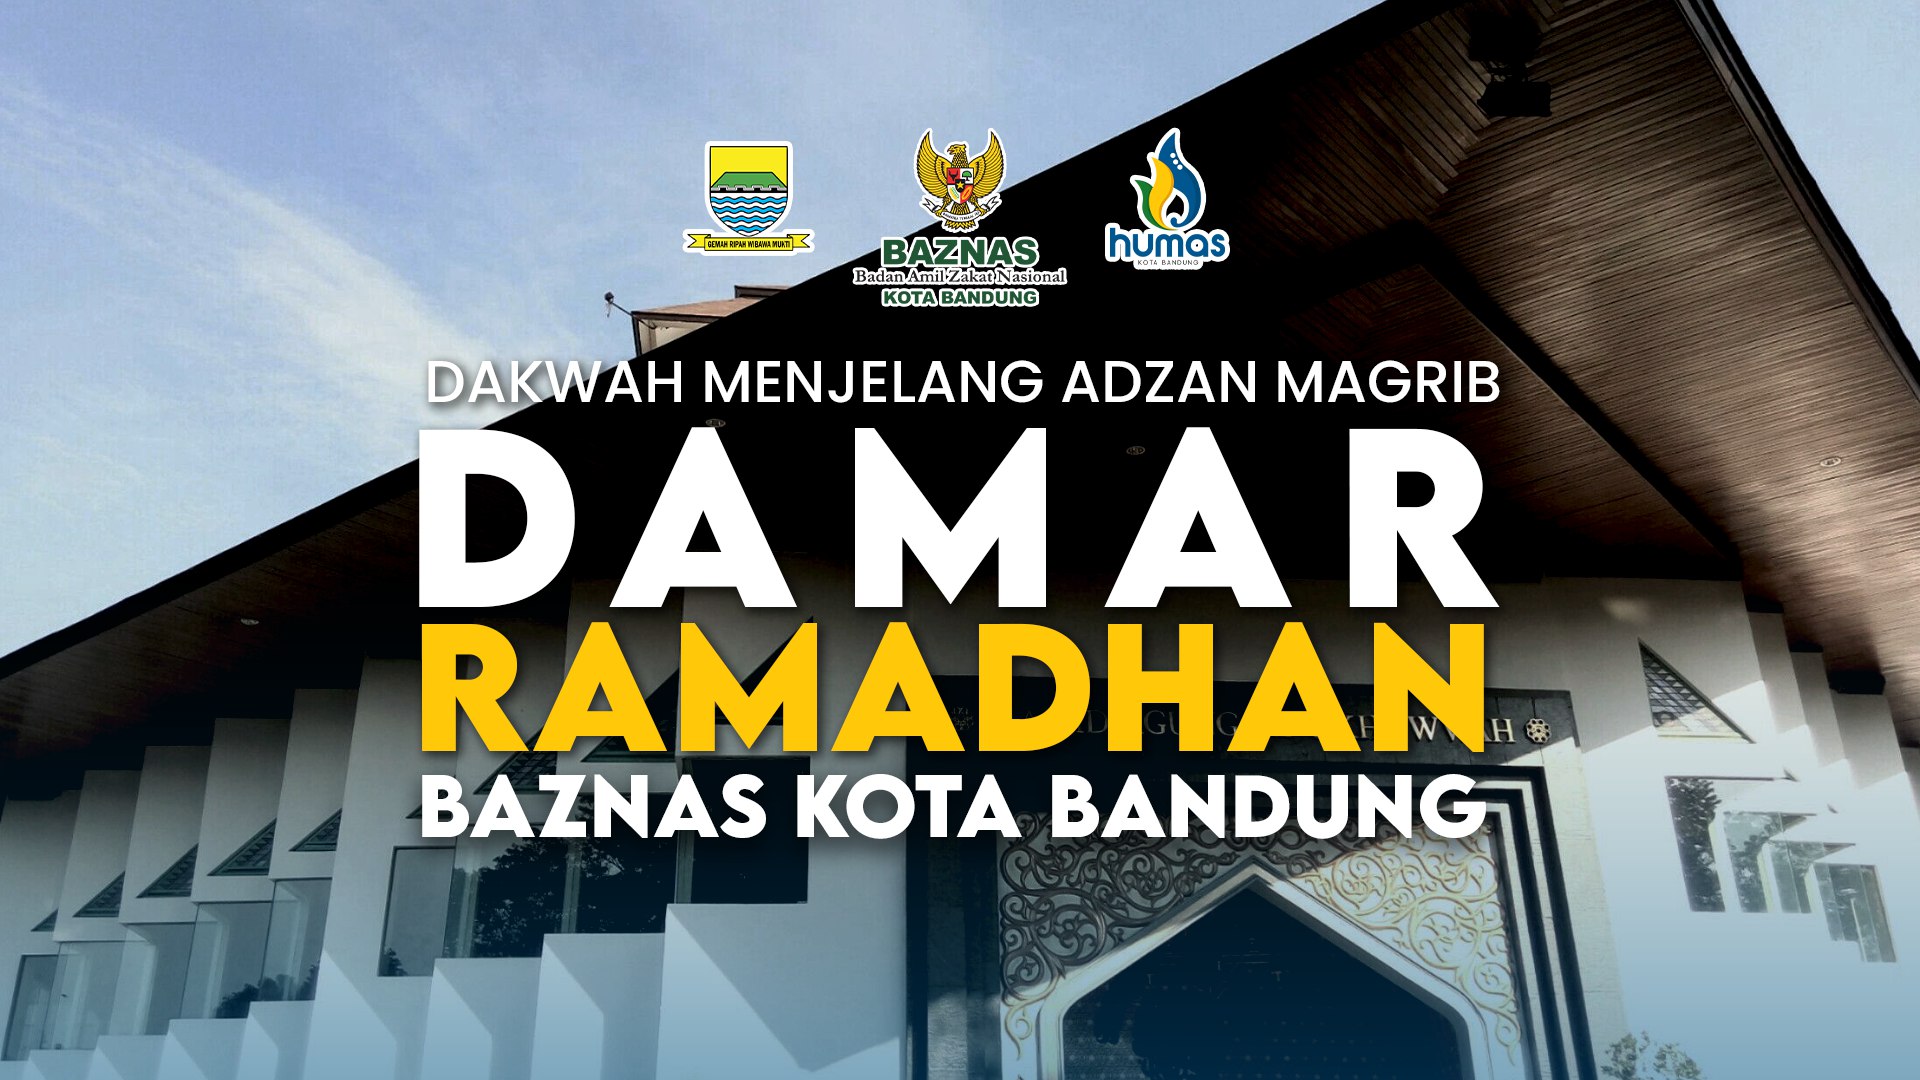 Siaran Pers Diskominfo Kota Bandung
5 April 2022